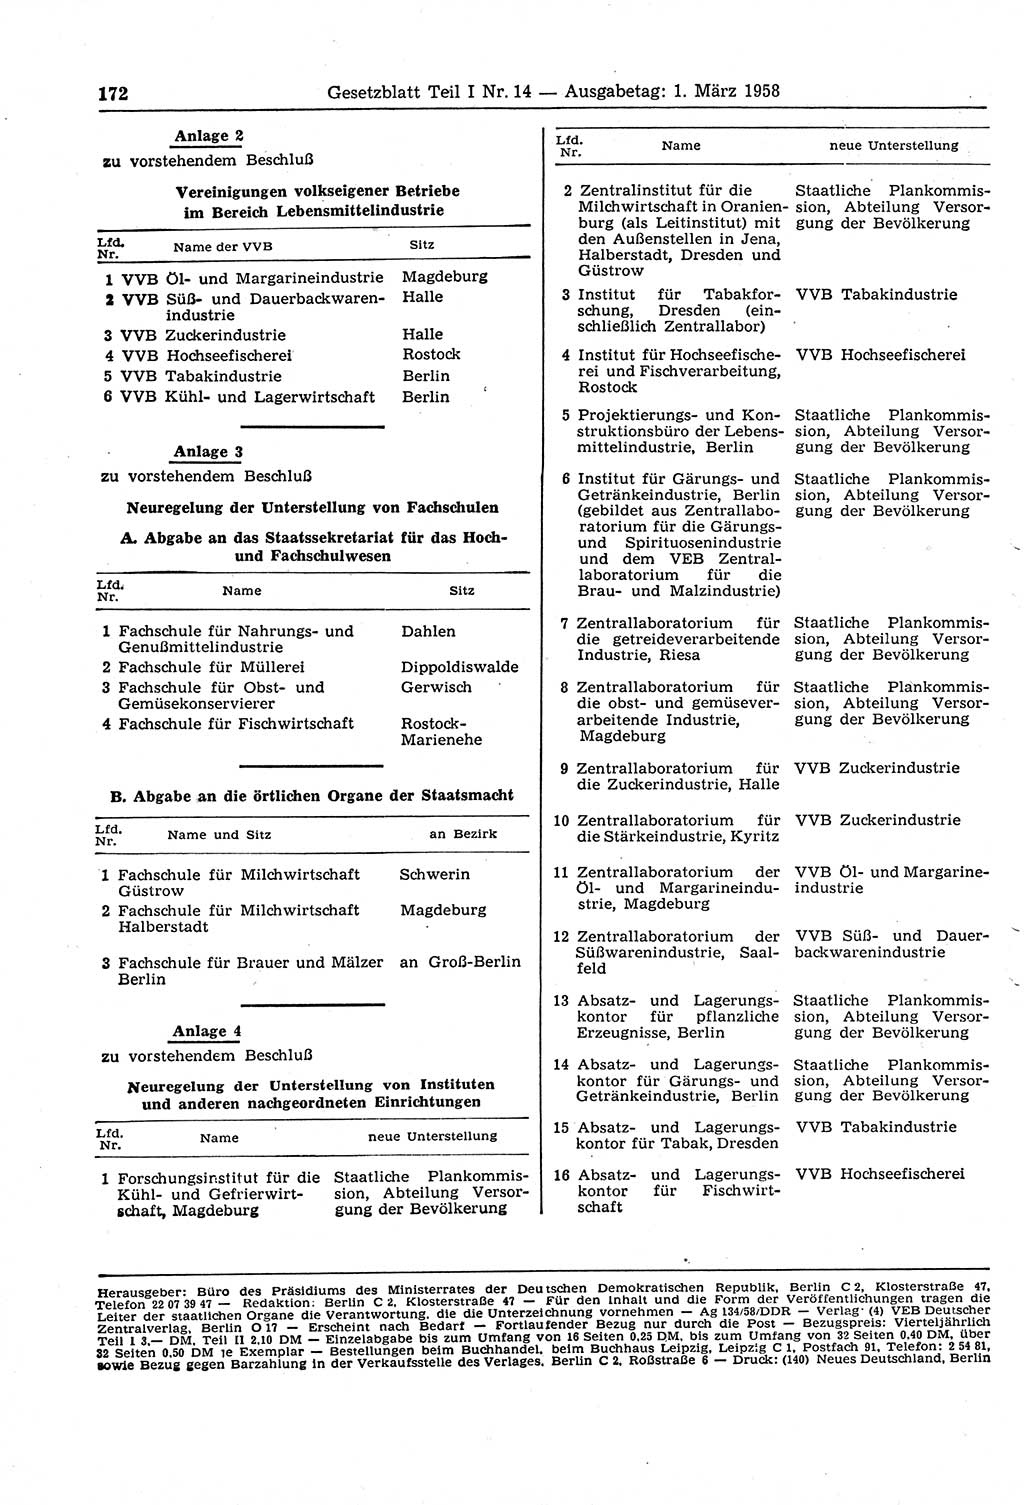 Gesetzblatt (GBl.) der Deutschen Demokratischen Republik (DDR) Teil Ⅰ 1958, Seite 172 (GBl. DDR Ⅰ 1958, S. 172)